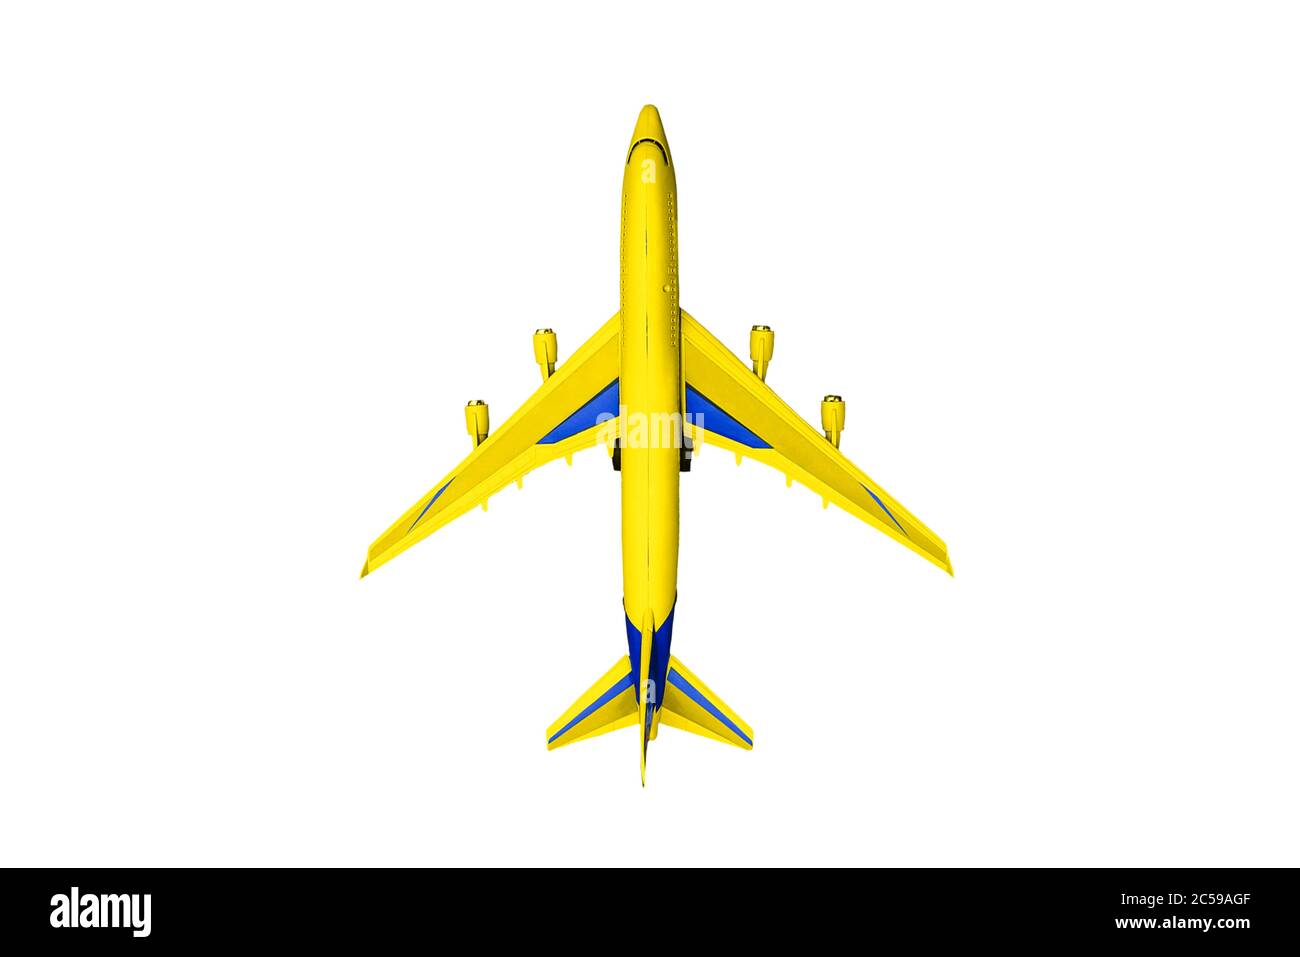 Avion de transport de passagers jaune isolé sur fond blanc. Vue de dessus, plan d'agencement. Banque D'Images